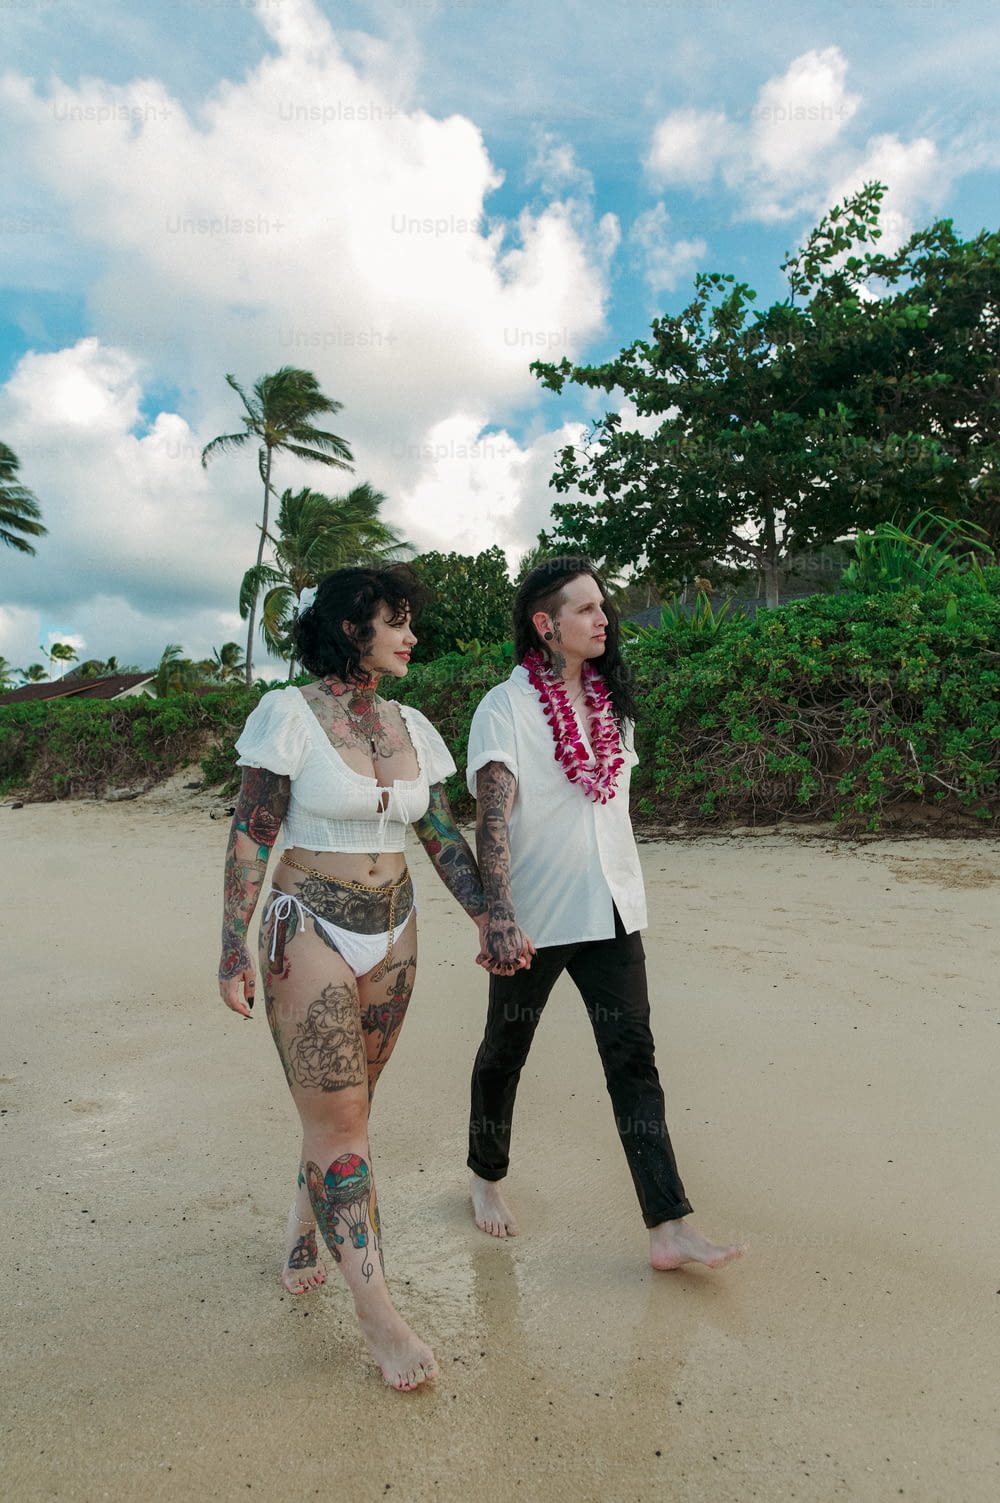 a couple of women walking across a sandy beach